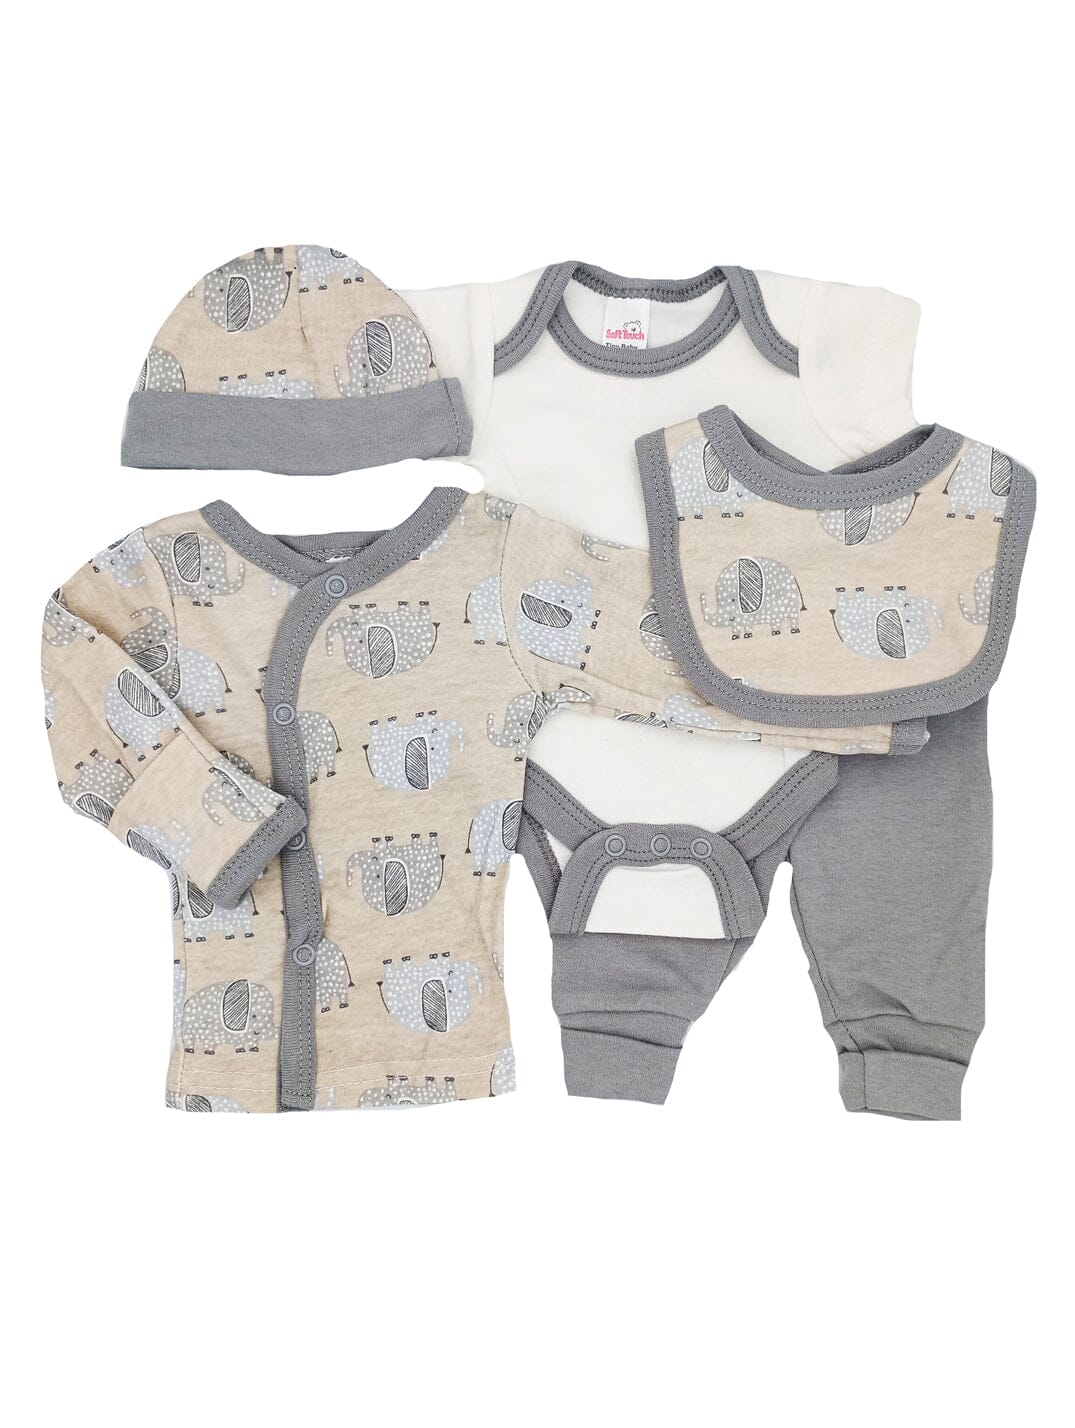 Elephant Print 5 Piece Set - Vest, Top, Trousers, Bib & Hat Outift Soft Touch 